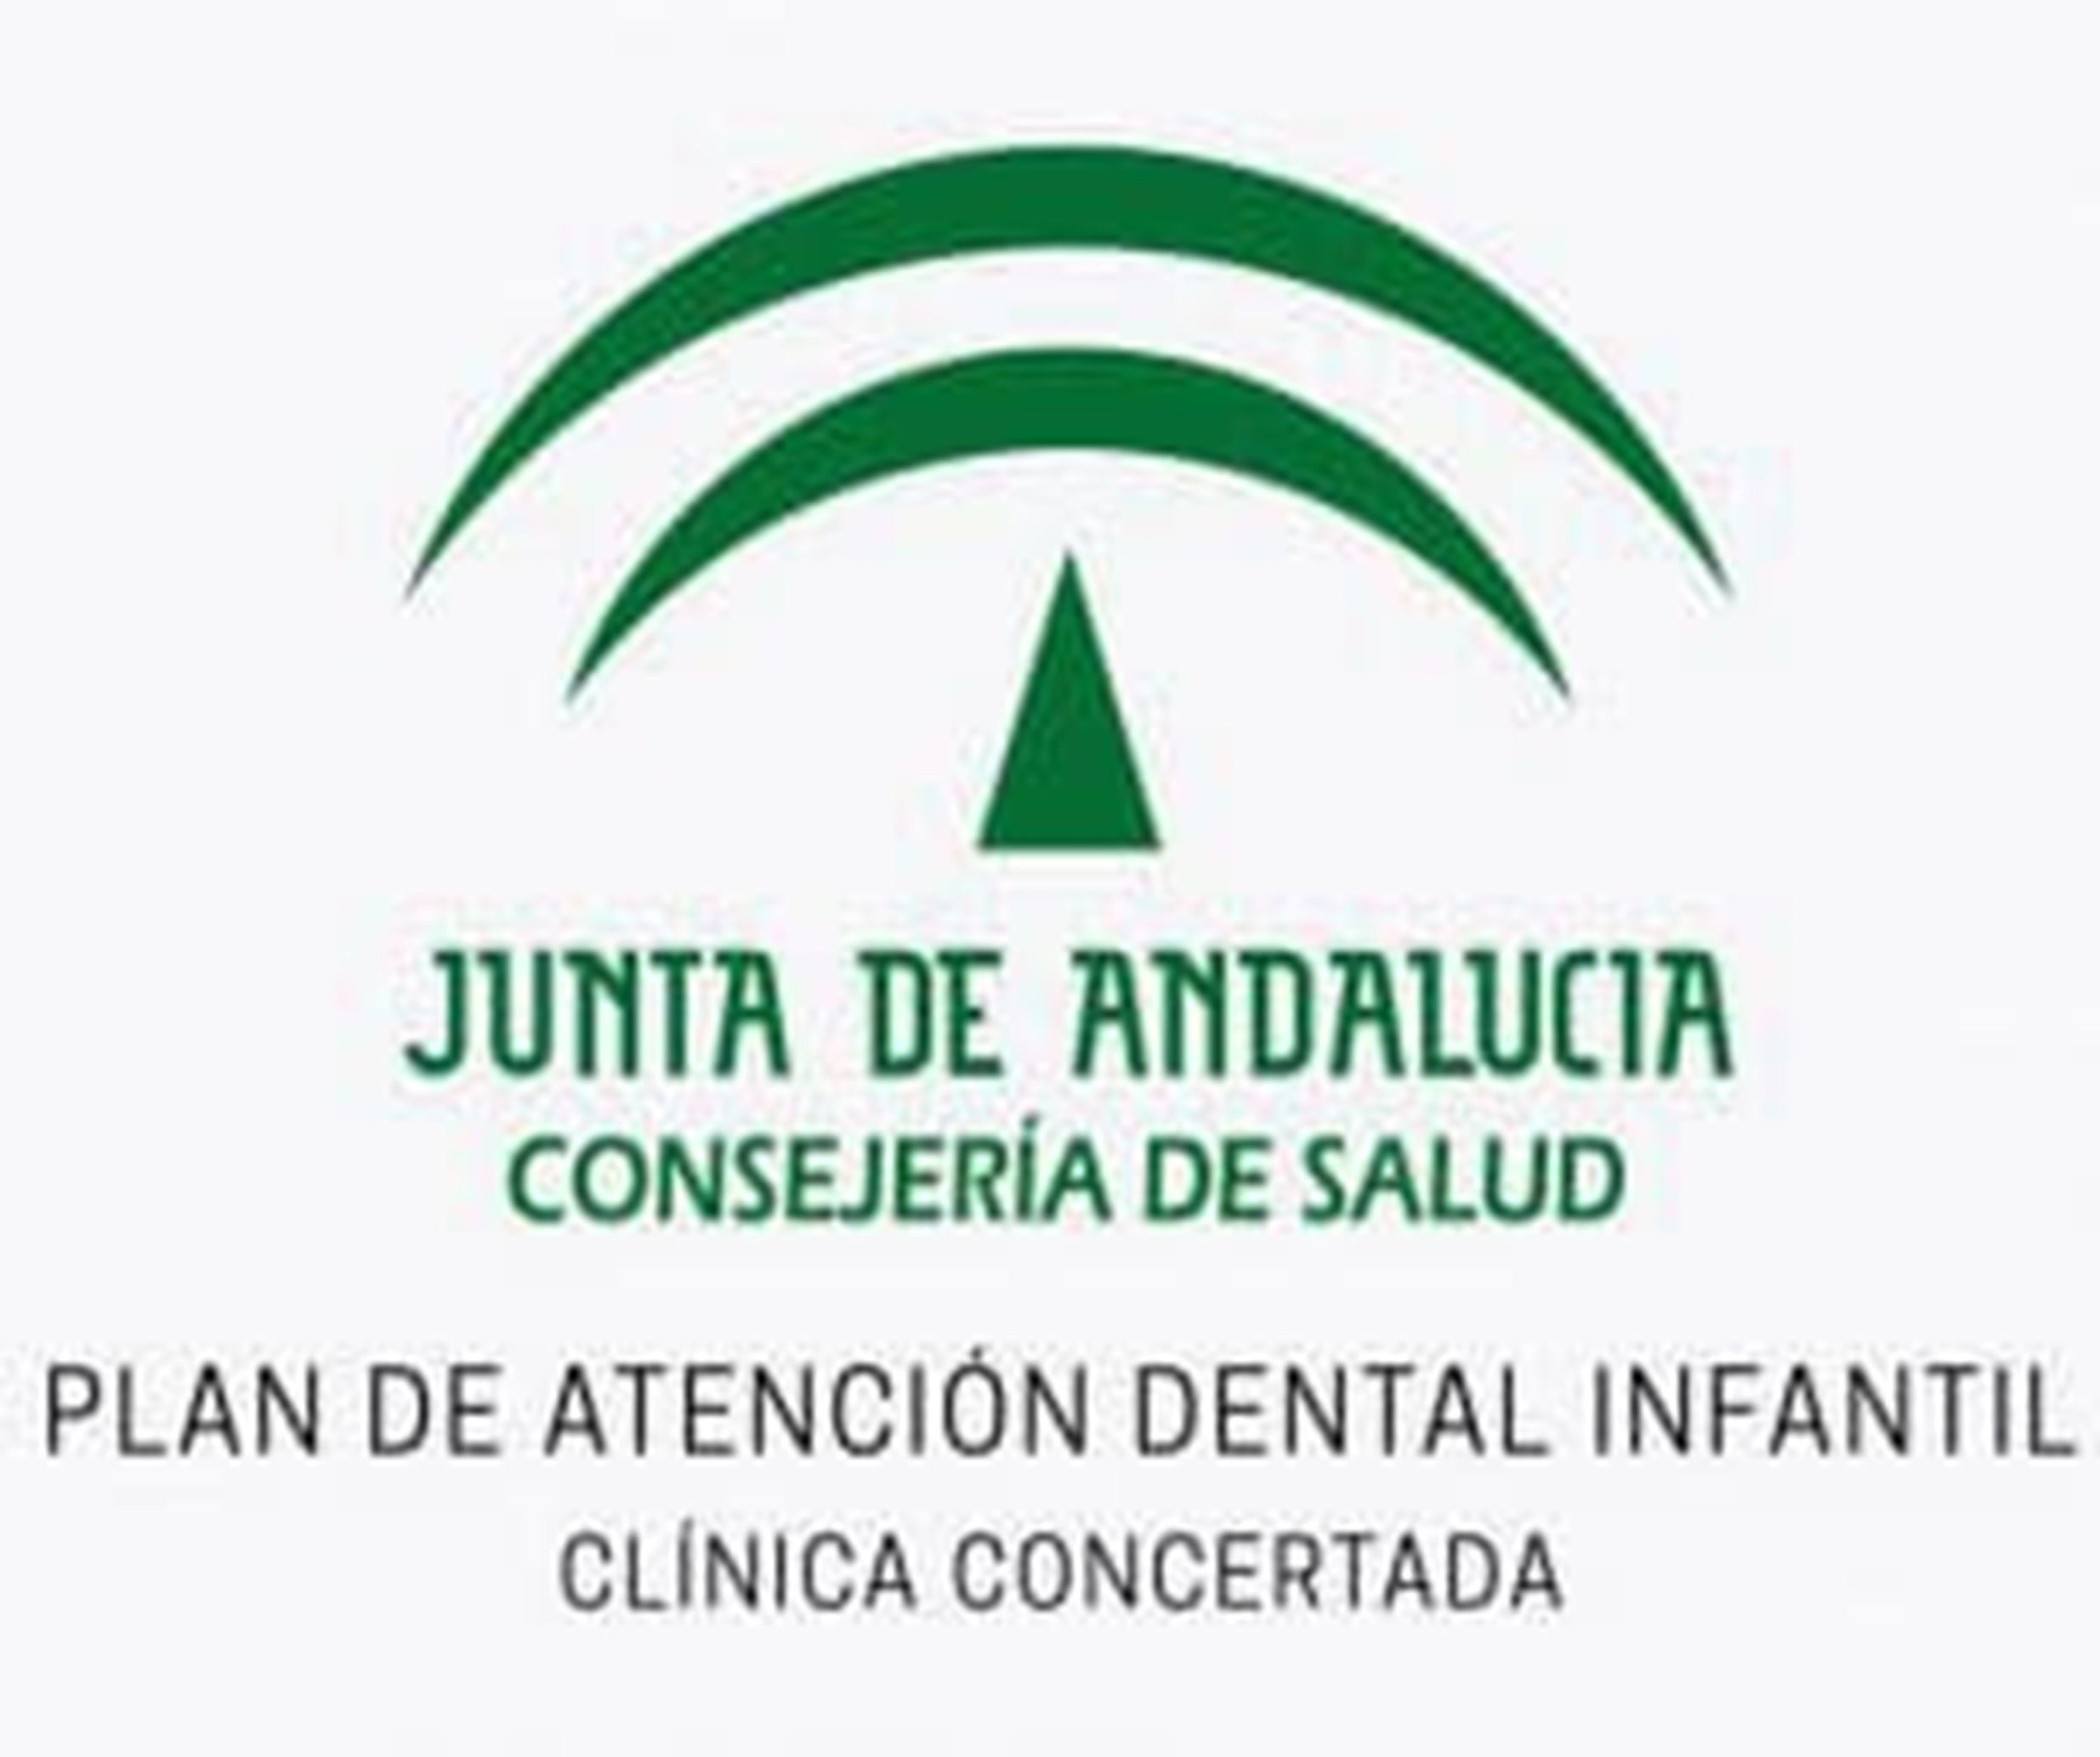 imagen destacada de la Junta de Andalucía sobre el plan de atención dental infantil